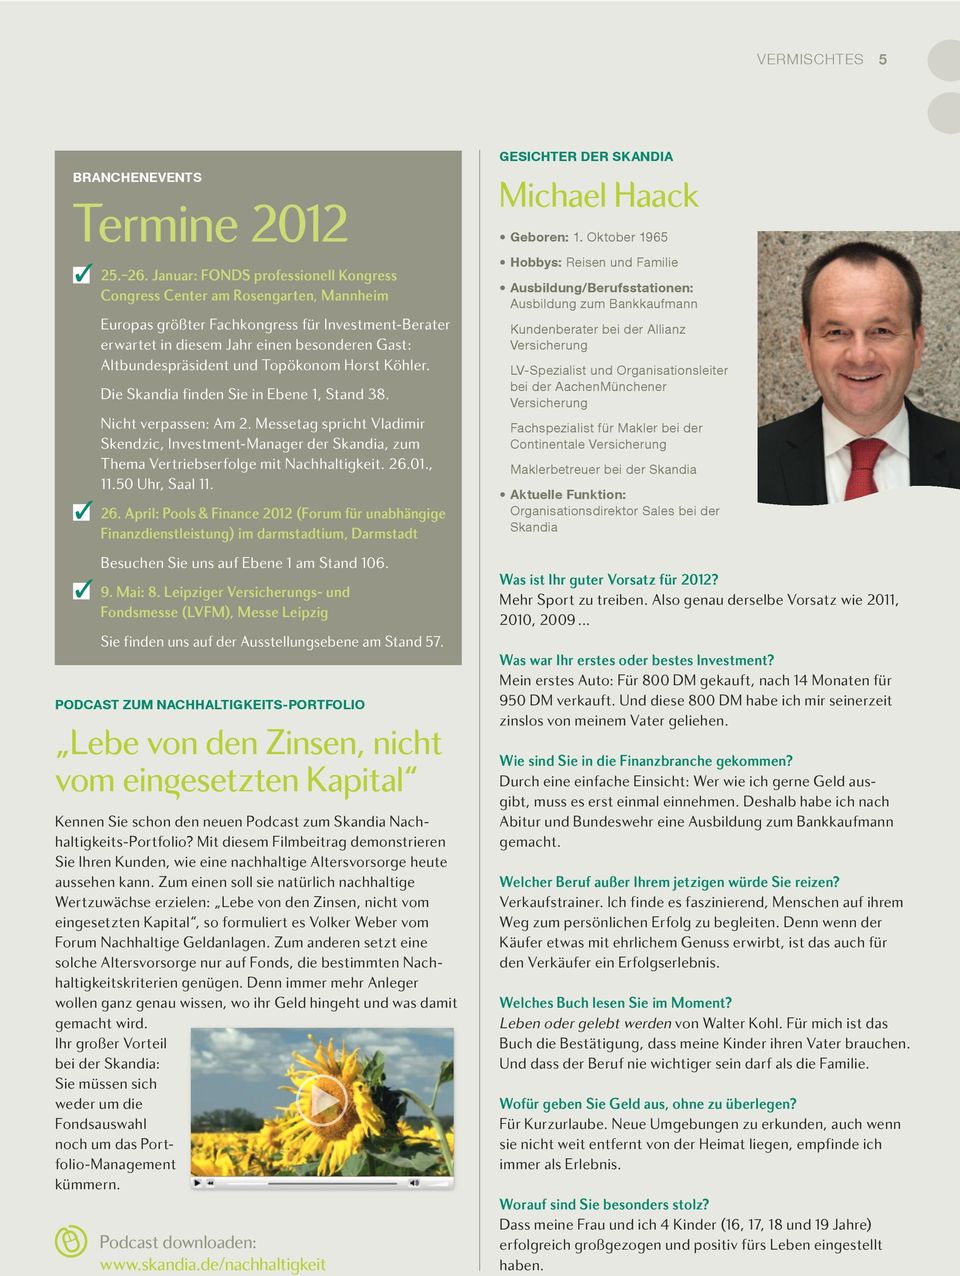 April: Pools & Finance 2012 (Forum für unabhängige Finanzdienstleistung) im darmstadtium, Darmstadt 9. Mai: 8.